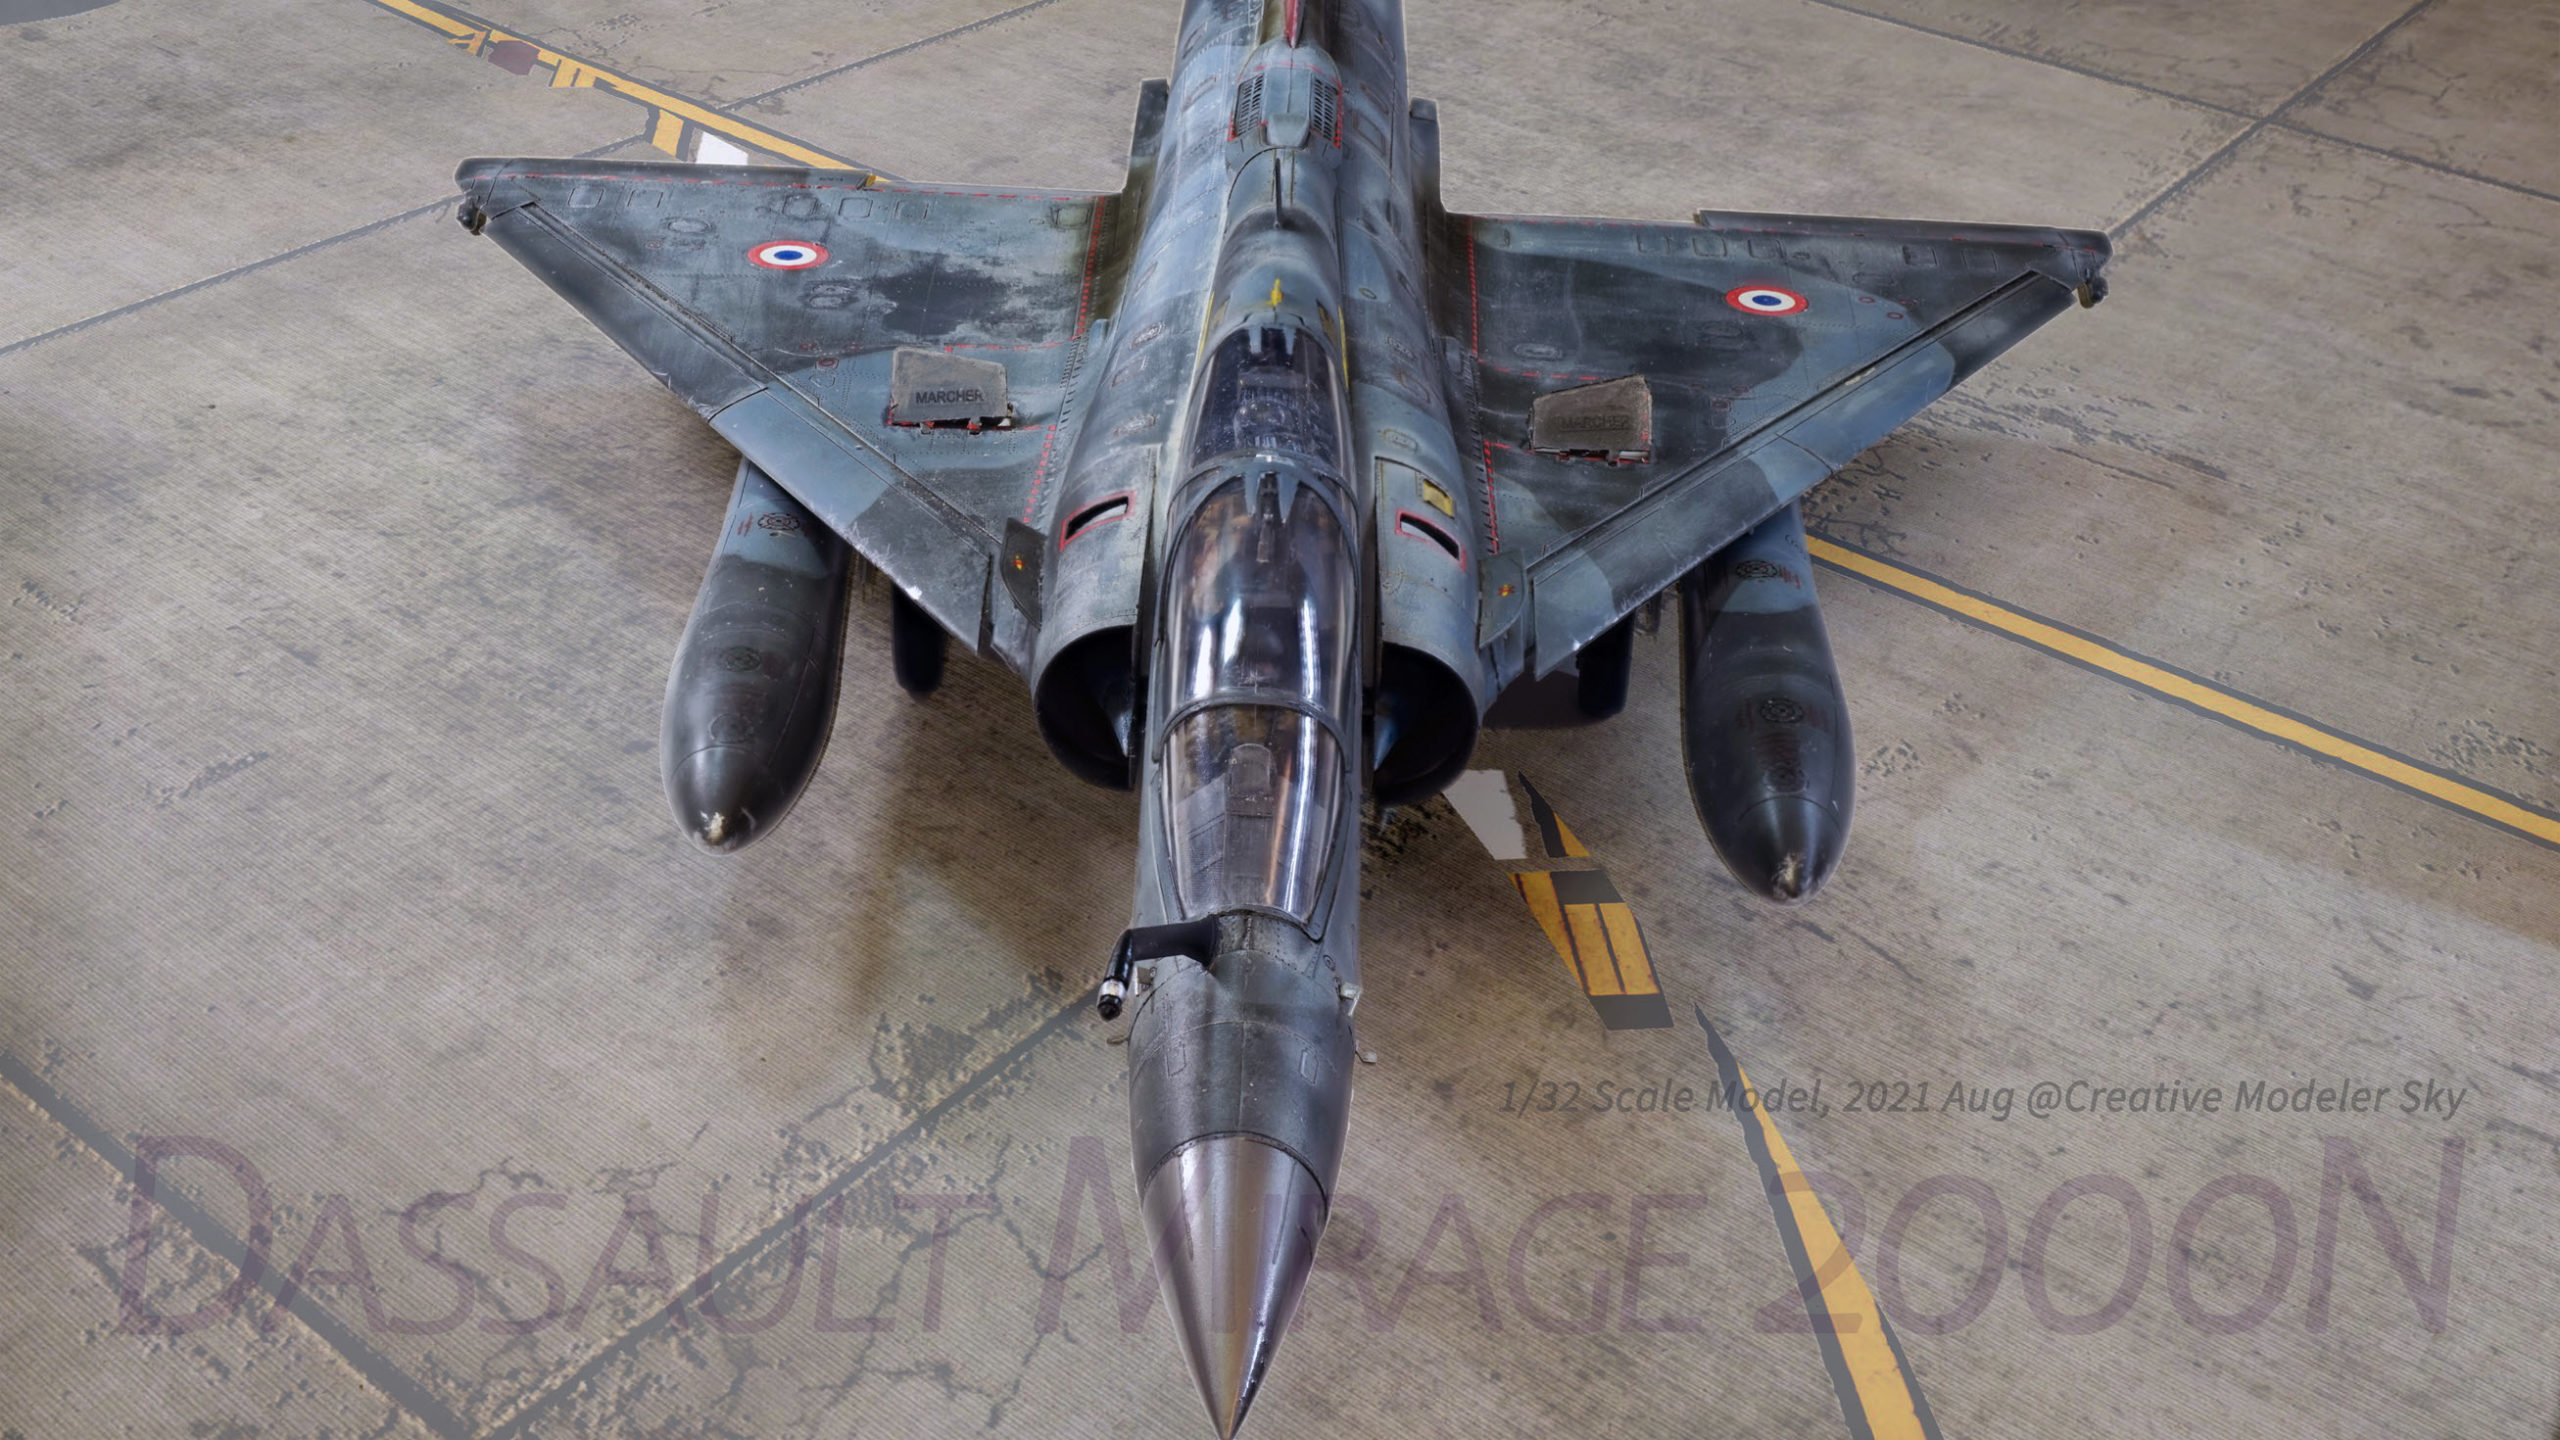 Dassault Mirage 2000N/2000D in new presentation